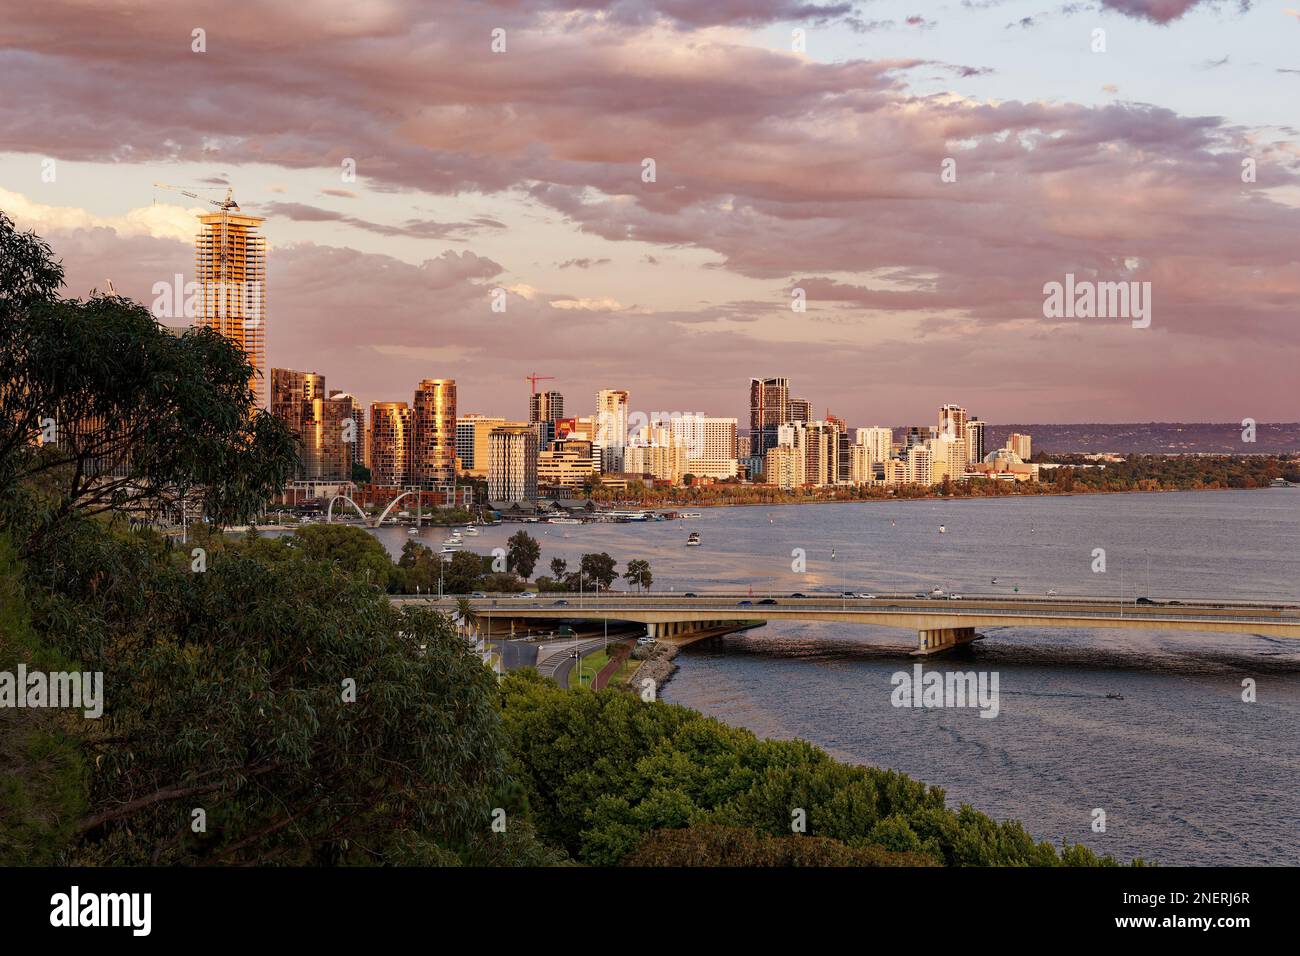 Vue sur le centre de Perth en Australie occidentale, paysage avec les gratte-ciels, les parcs et la baie avec le pont au coucher ou au lever du soleil. Nuages sur TH Banque D'Images